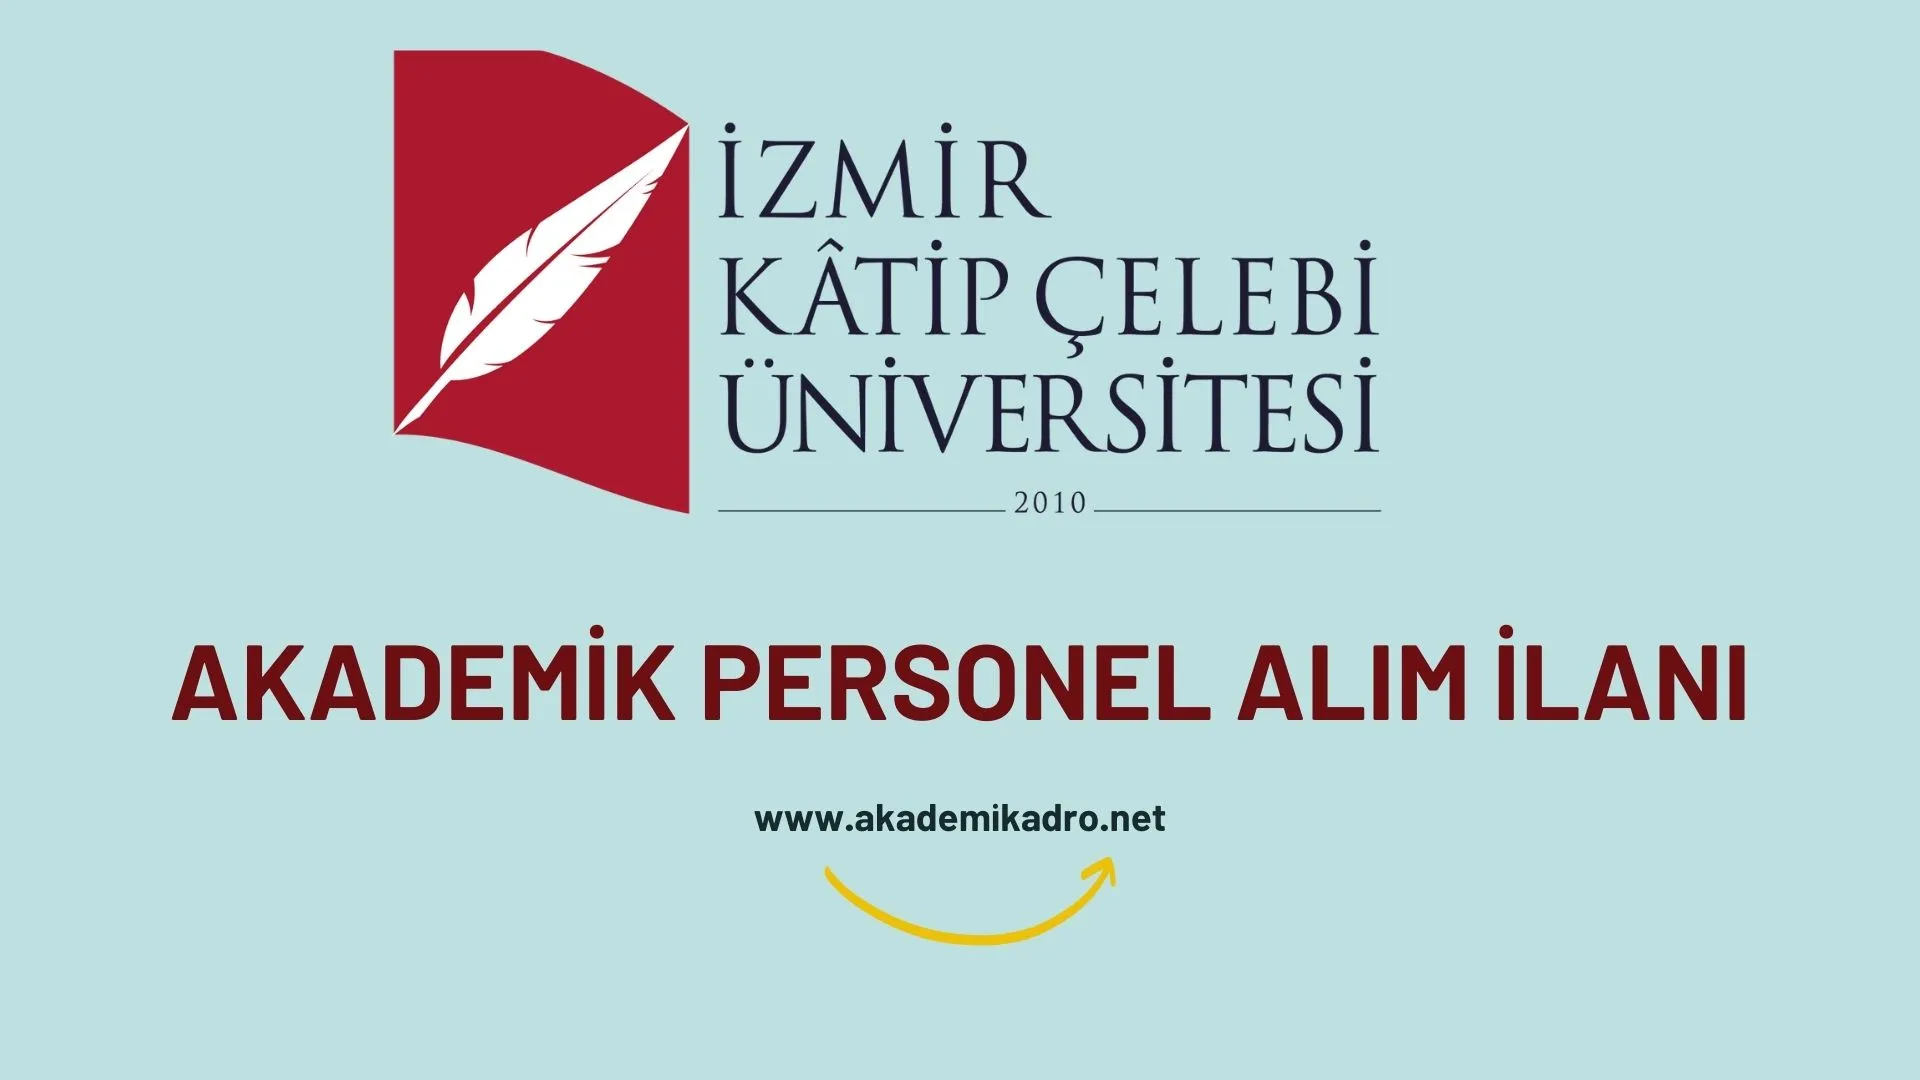 İzmir Katip Çelebi Üniversitesi 41 akademik personel alacak.